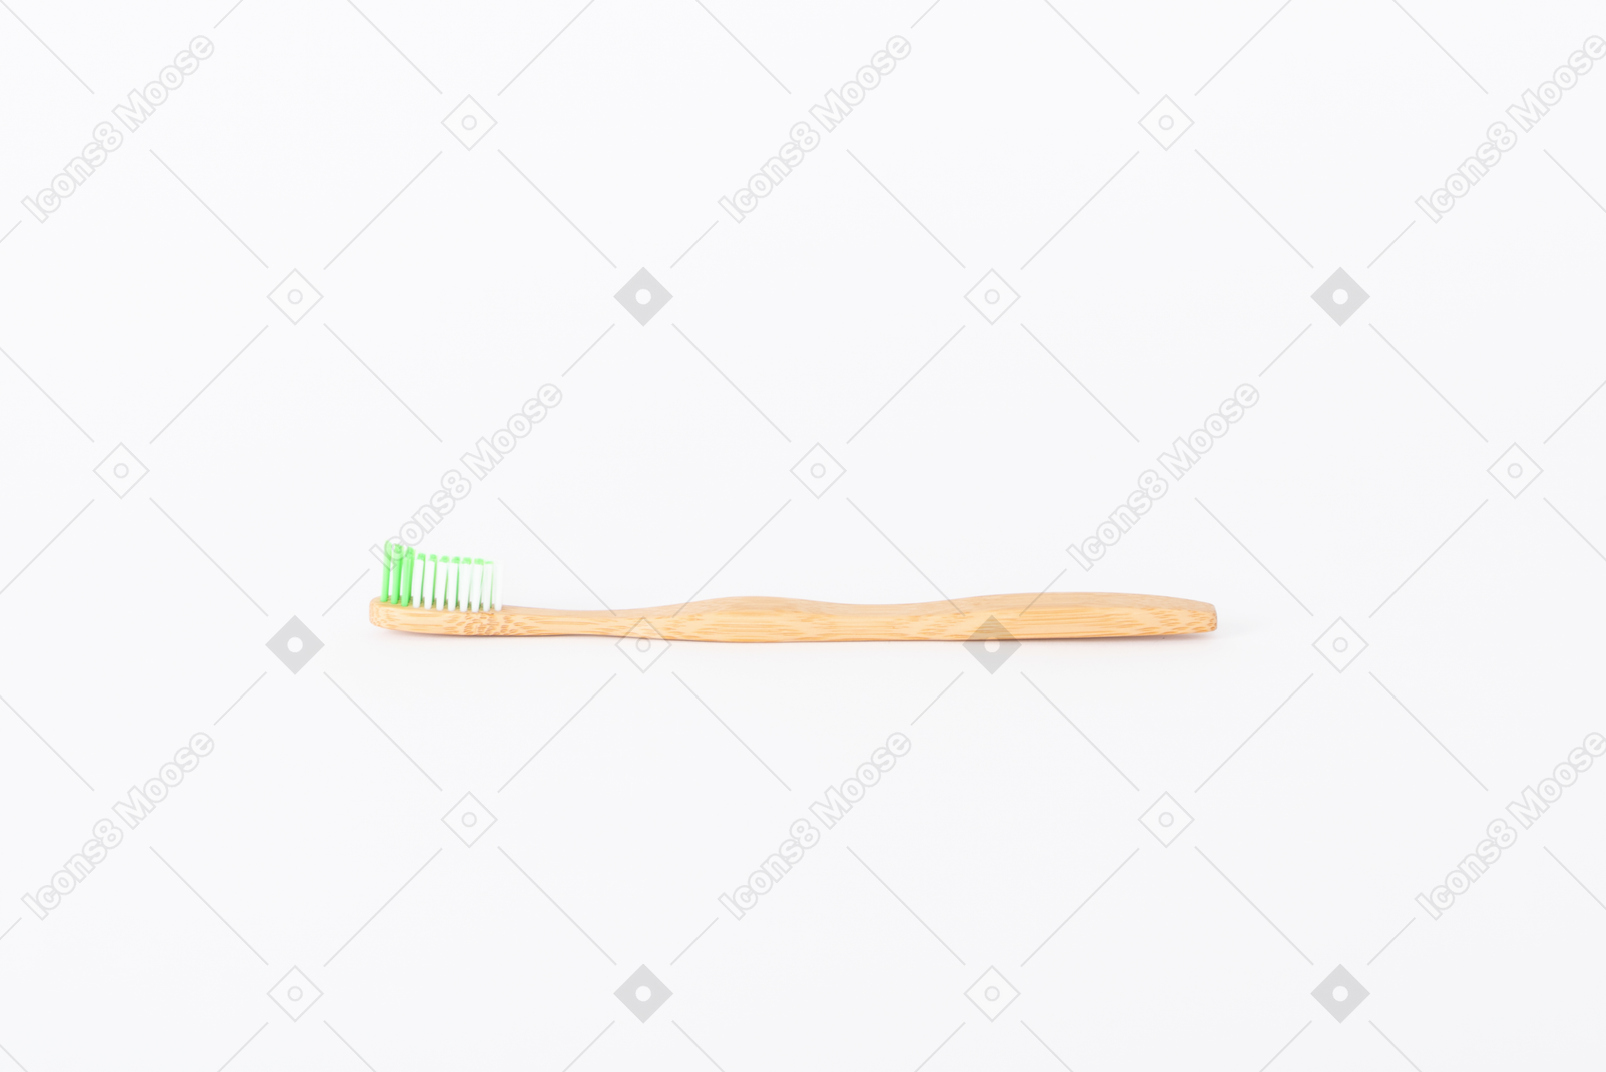 Indo para objetos de madeira para a higiene cotidiana